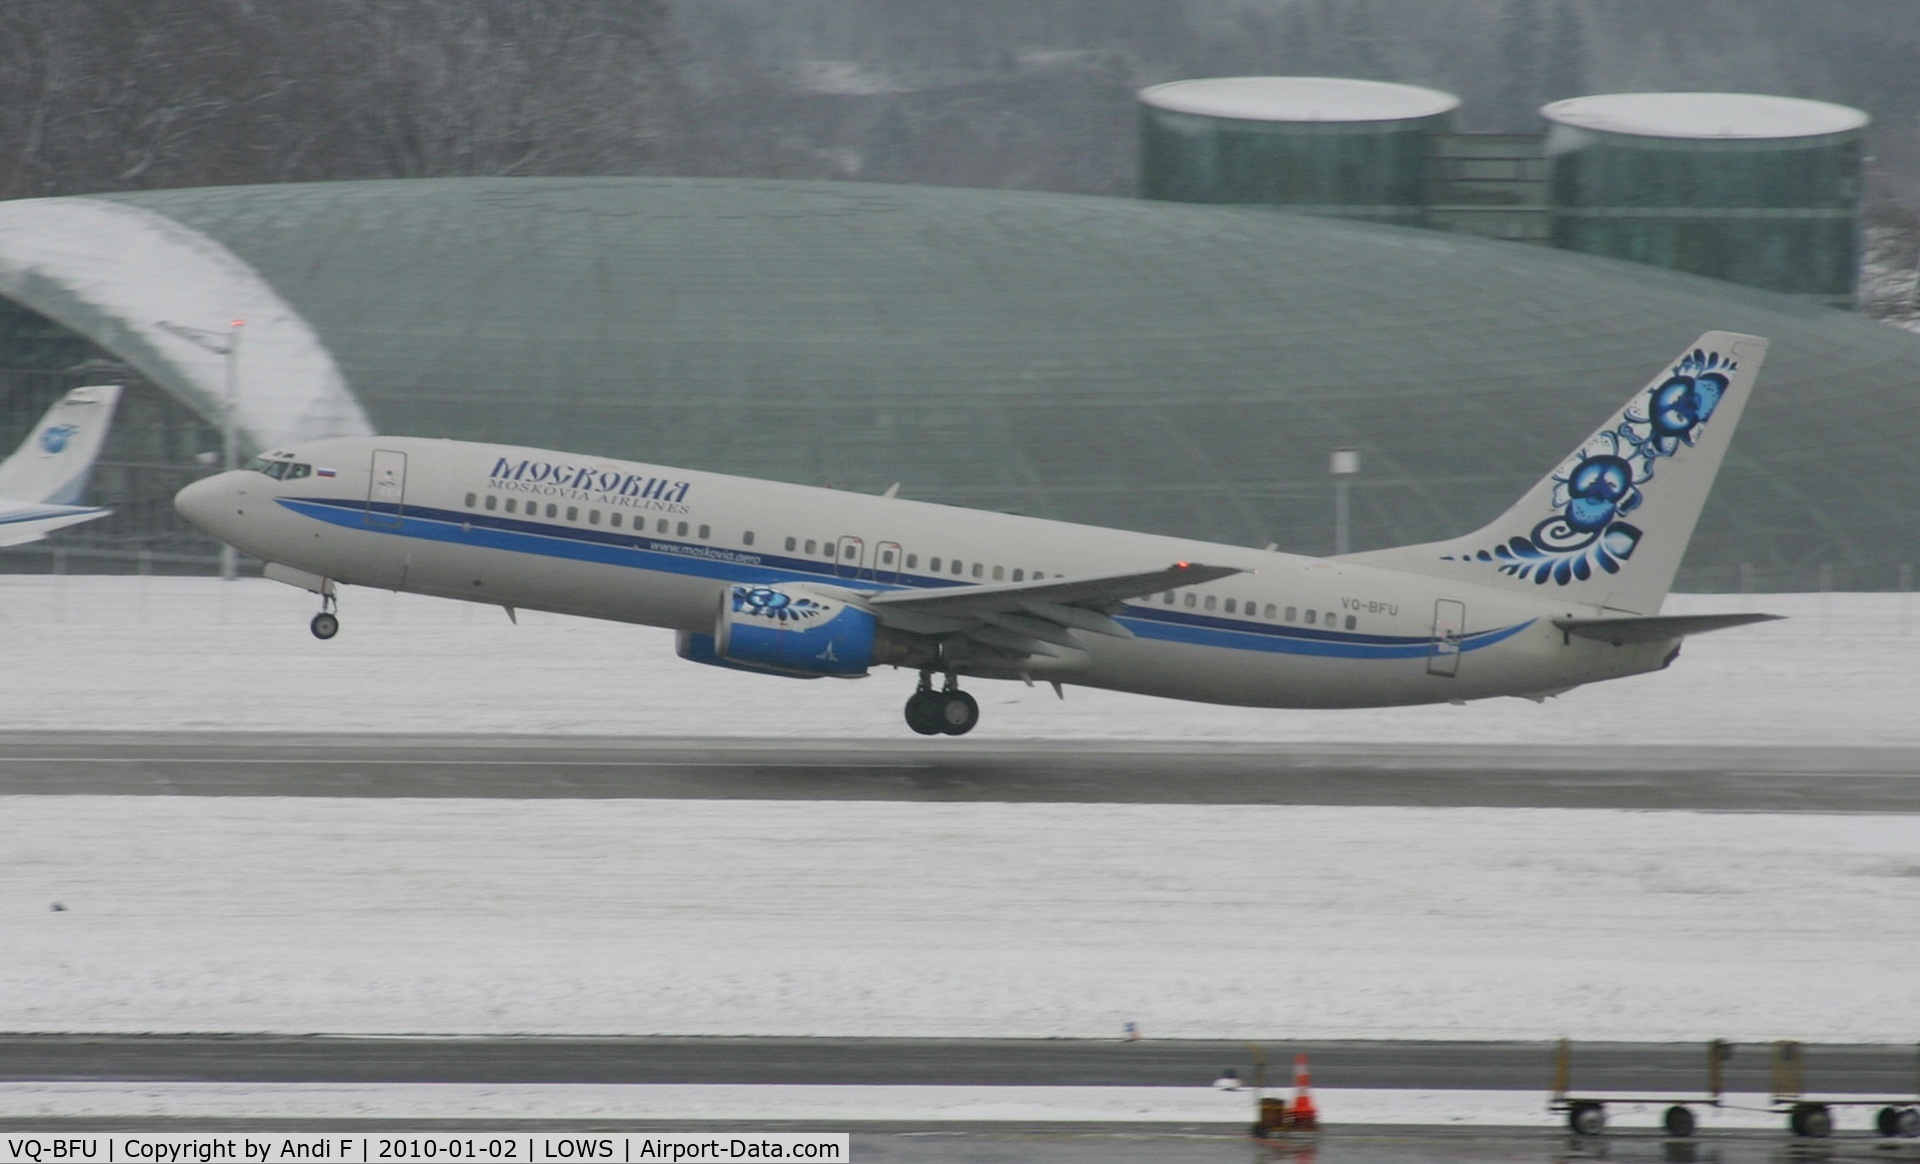 VQ-BFU, 2000 Boeing 737-883 C/N 30467, Moskovia Airlines 737-800